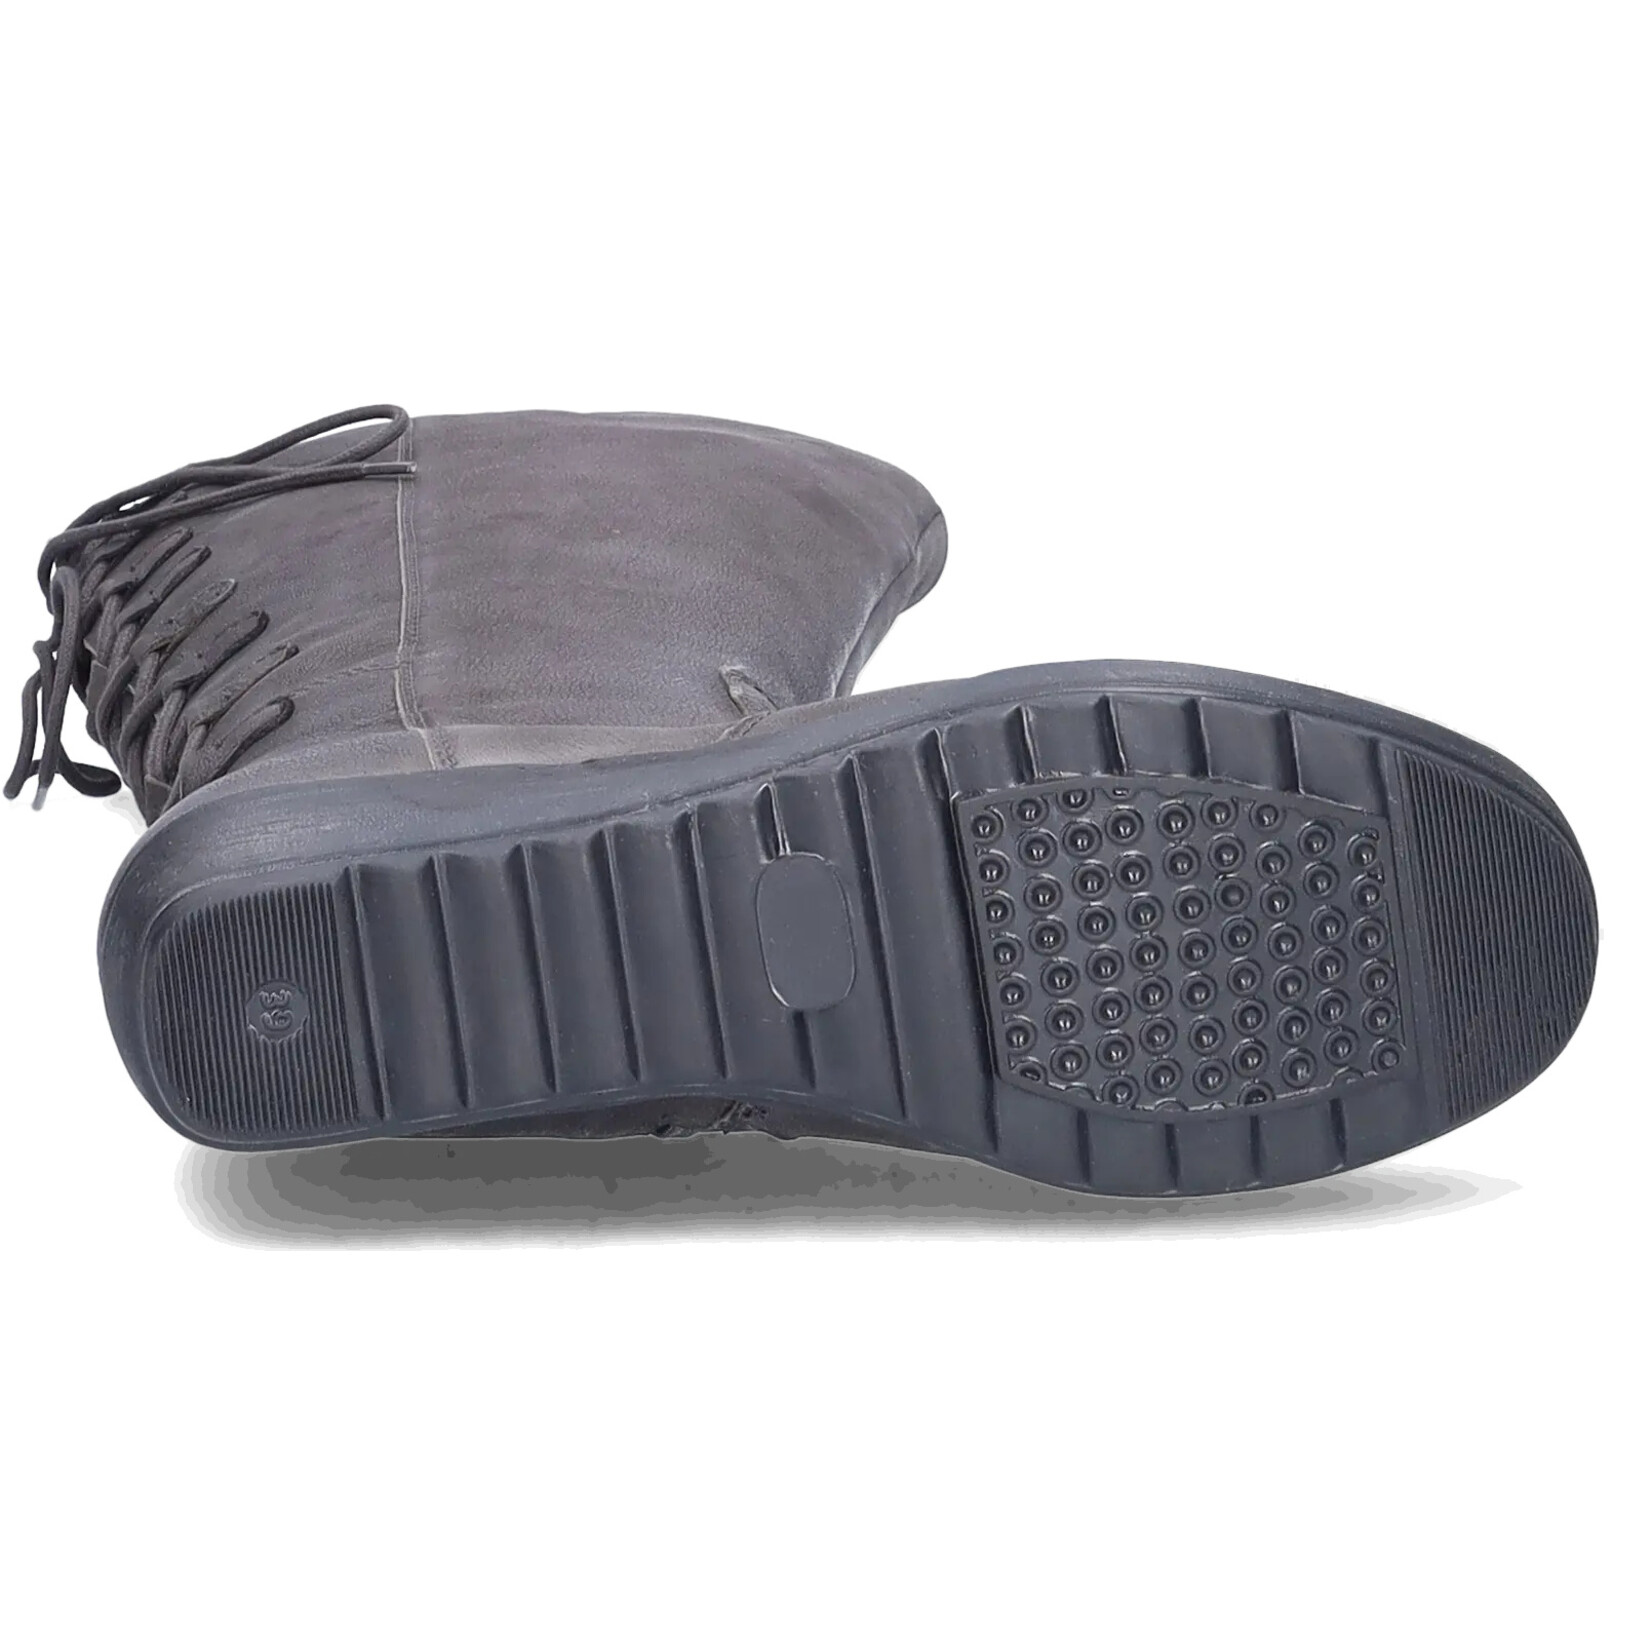 JJ Footwear Akins - Asphalt